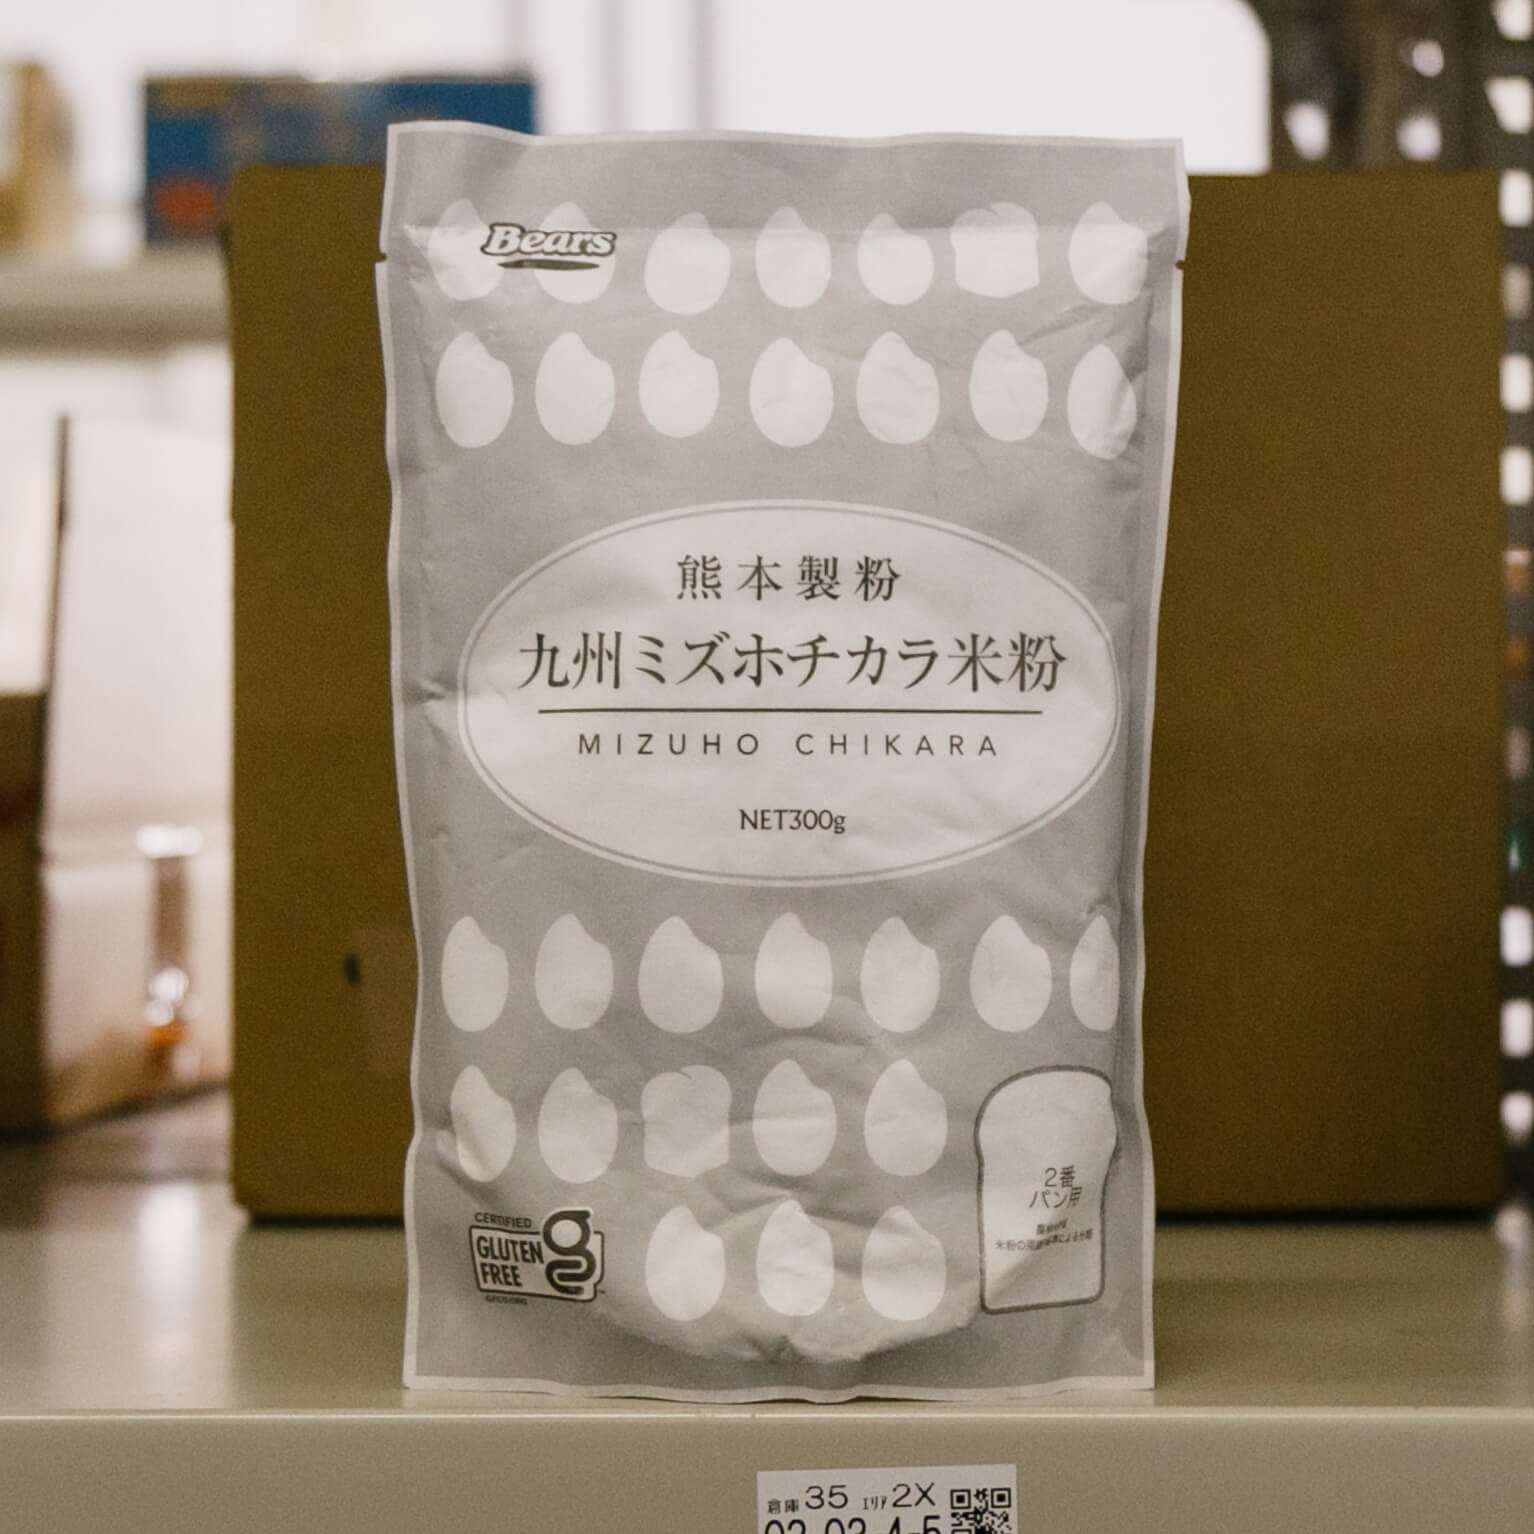 九州ミズホチカラ米粉 300g 熊本製粉 スモールビジネスのための問屋サービス orderie(オーダリー)